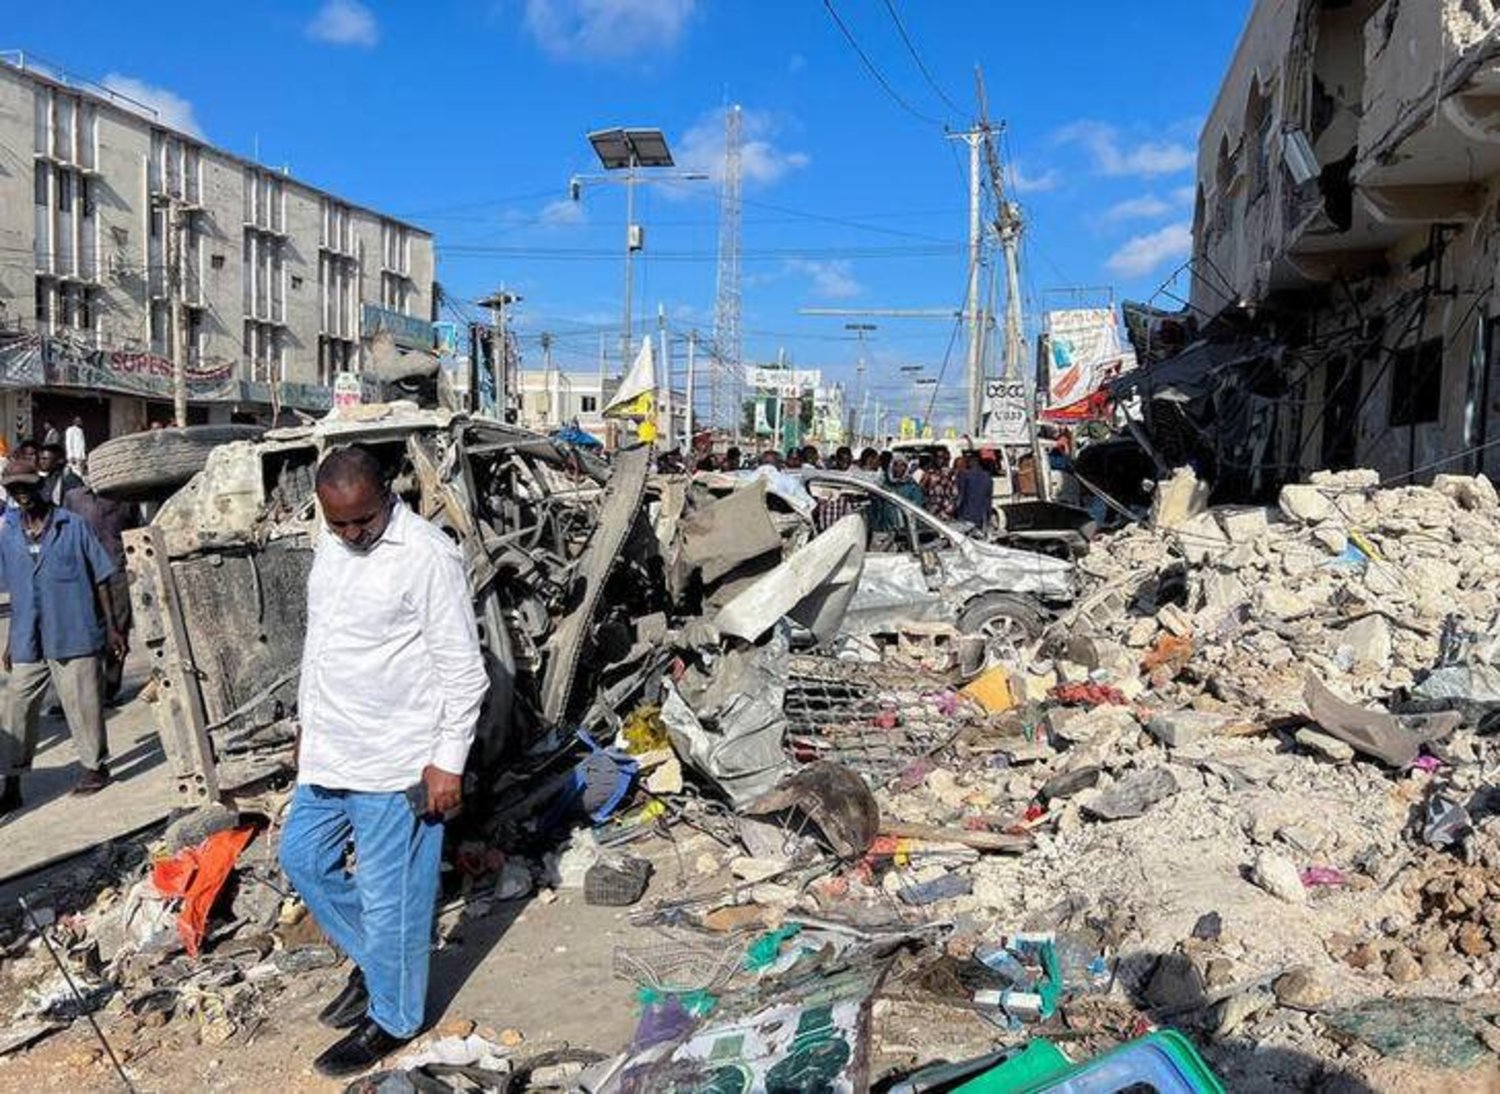 رجل يسير بجوار حطام سيارات مدمرة بالقرب من أنقاض مبنى في مكان انفجار بمقديشو الصومال في 30 أكتوبر 2022 (رويترز)